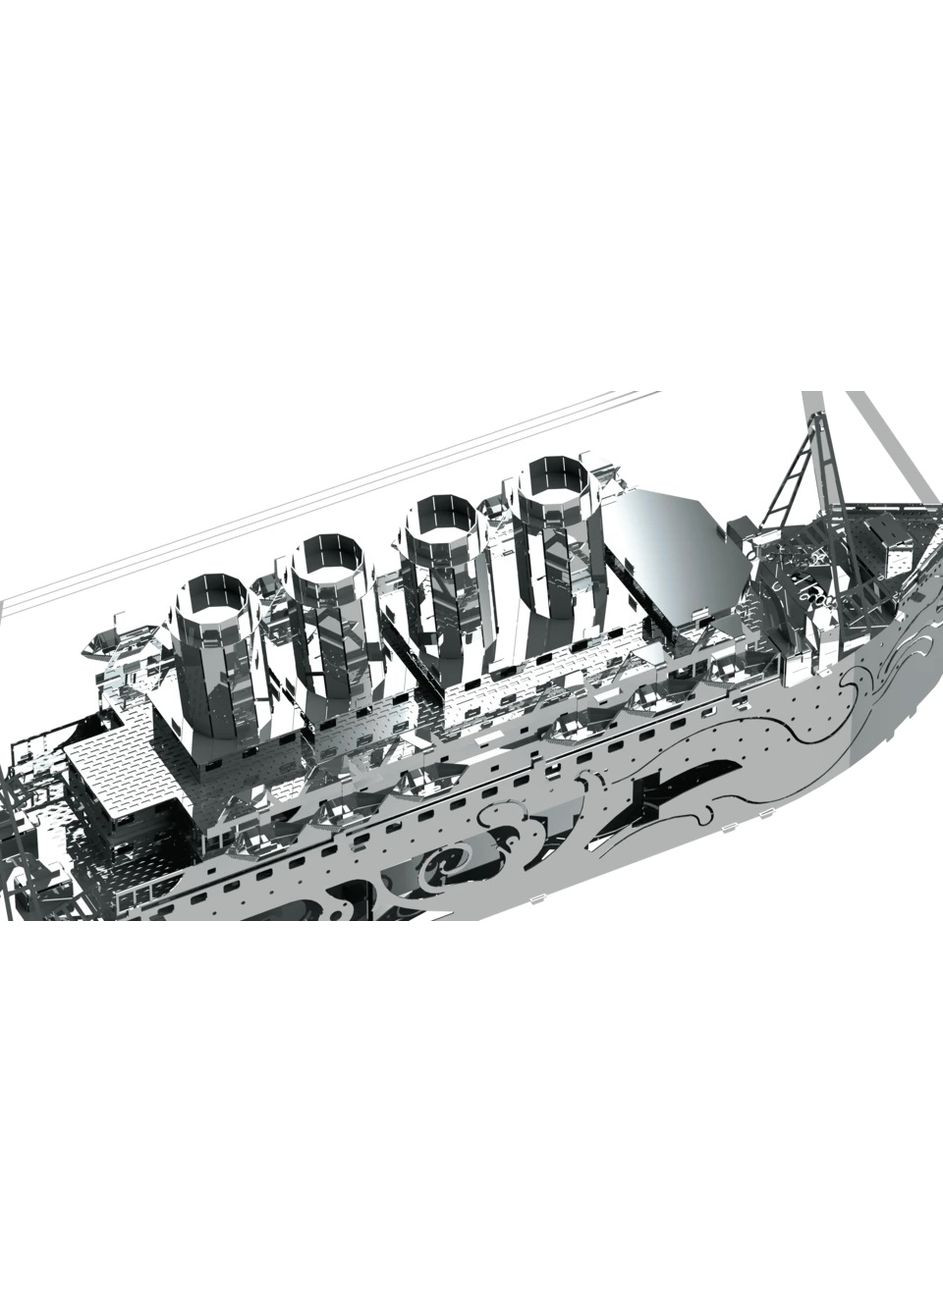 Колекційна модель-конструктор Lost at Sea механічний корабель Титанік MT044 Metal Time (267507711)